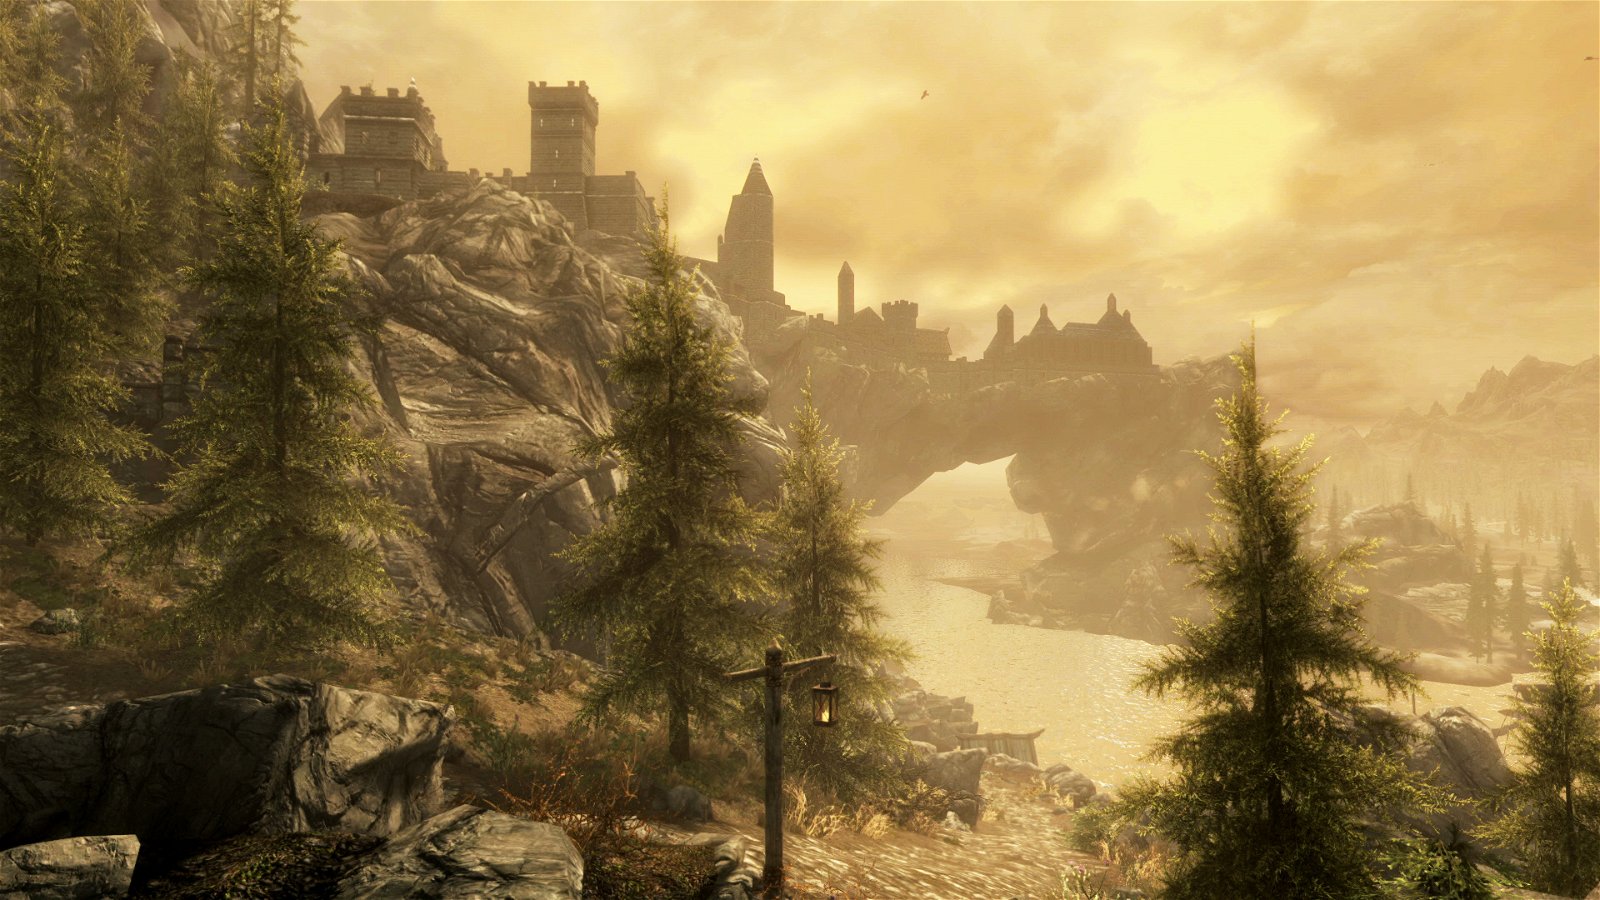 The Elder Scrolls V: Skyrim – Special Edition (Pc) Review 5